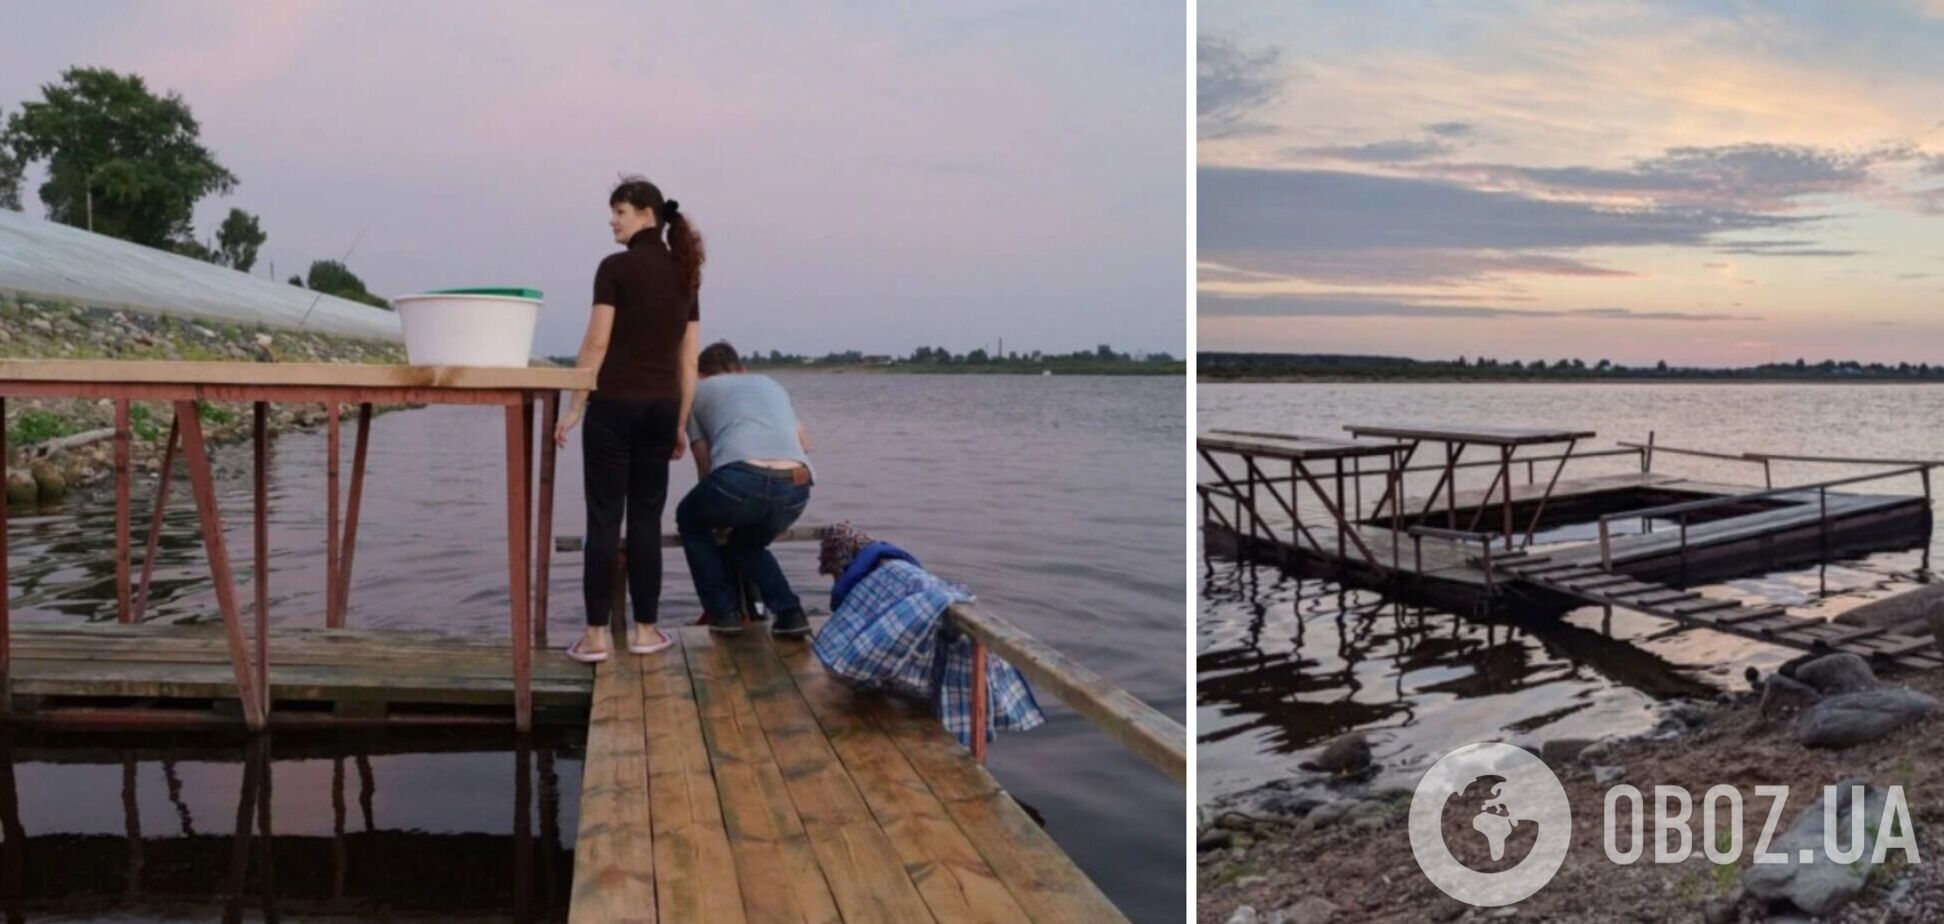 Прийшла цивілізація: росіяни похвалилися 'полоскалками' для прання в річці. Відео